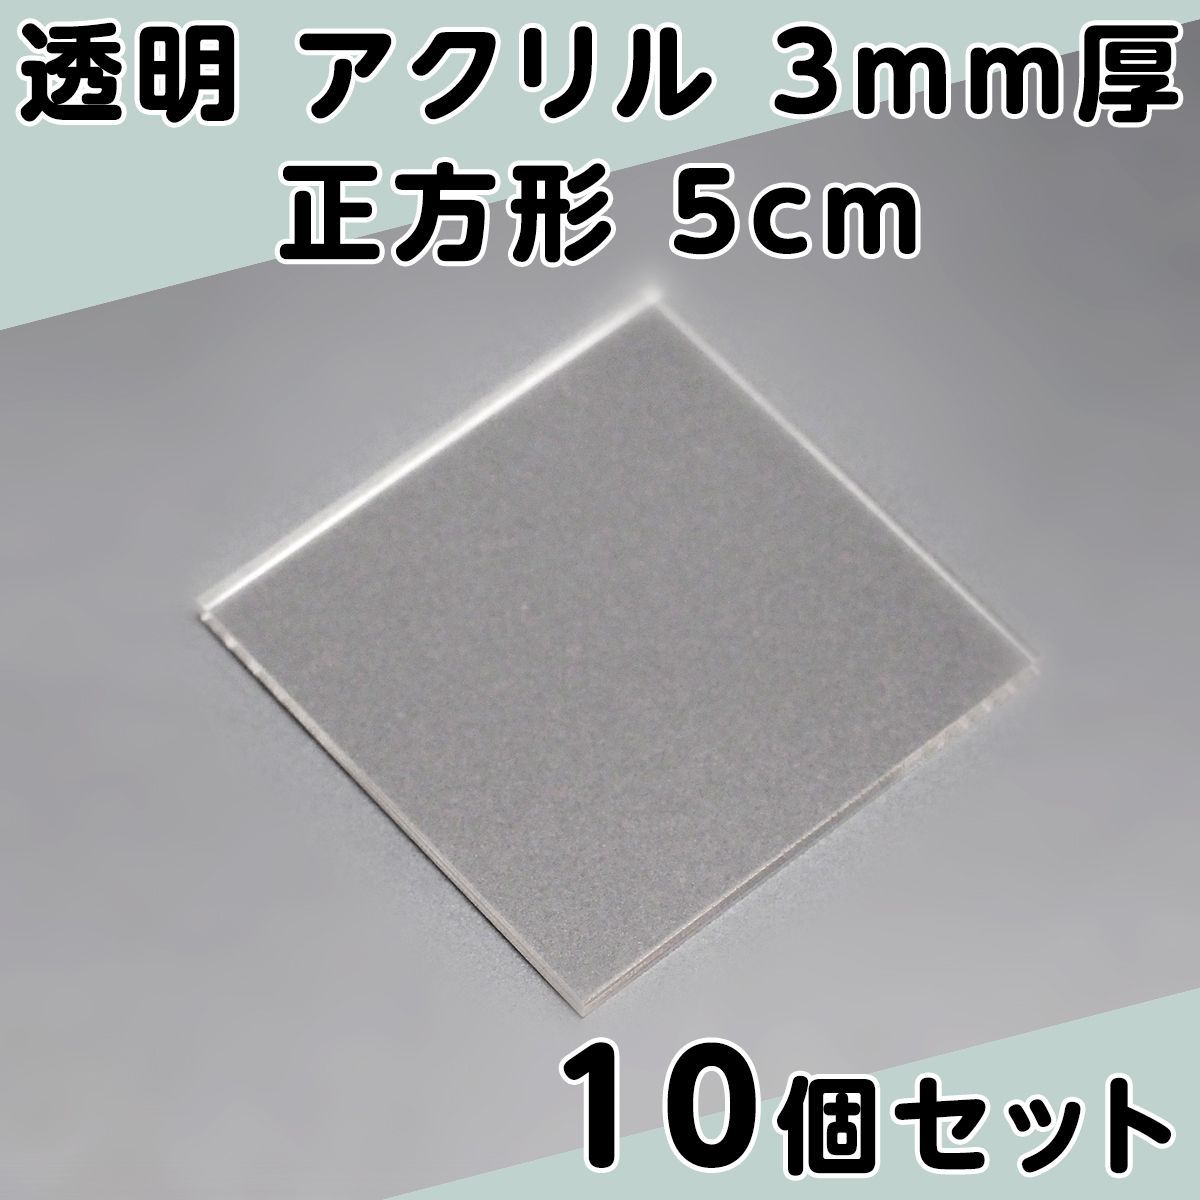 透明 アクリル 3mm厚 正方形 5cm 10個セット - メルカリ